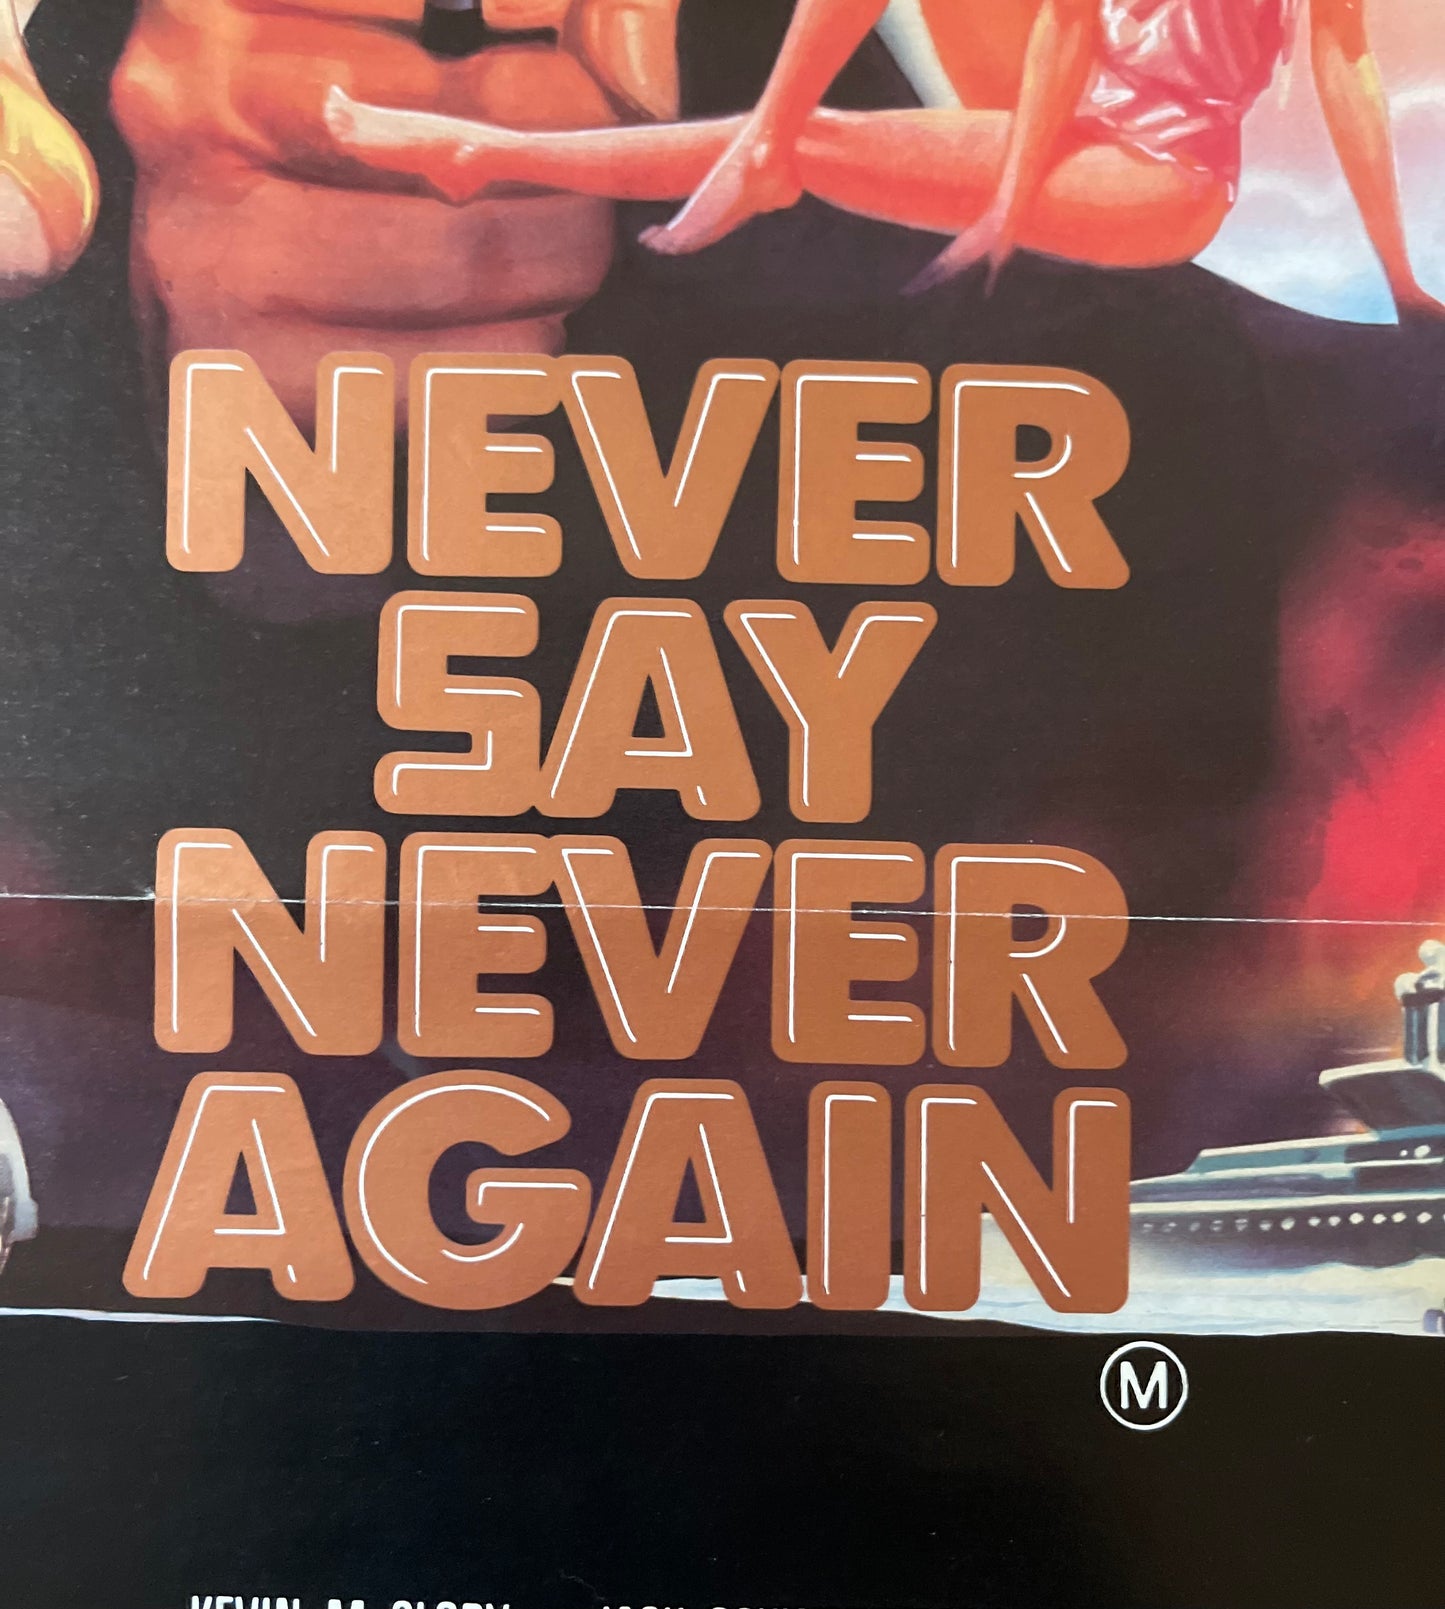 James Bond - Never Say Never Again - Sean Connery (1983) - Daybill